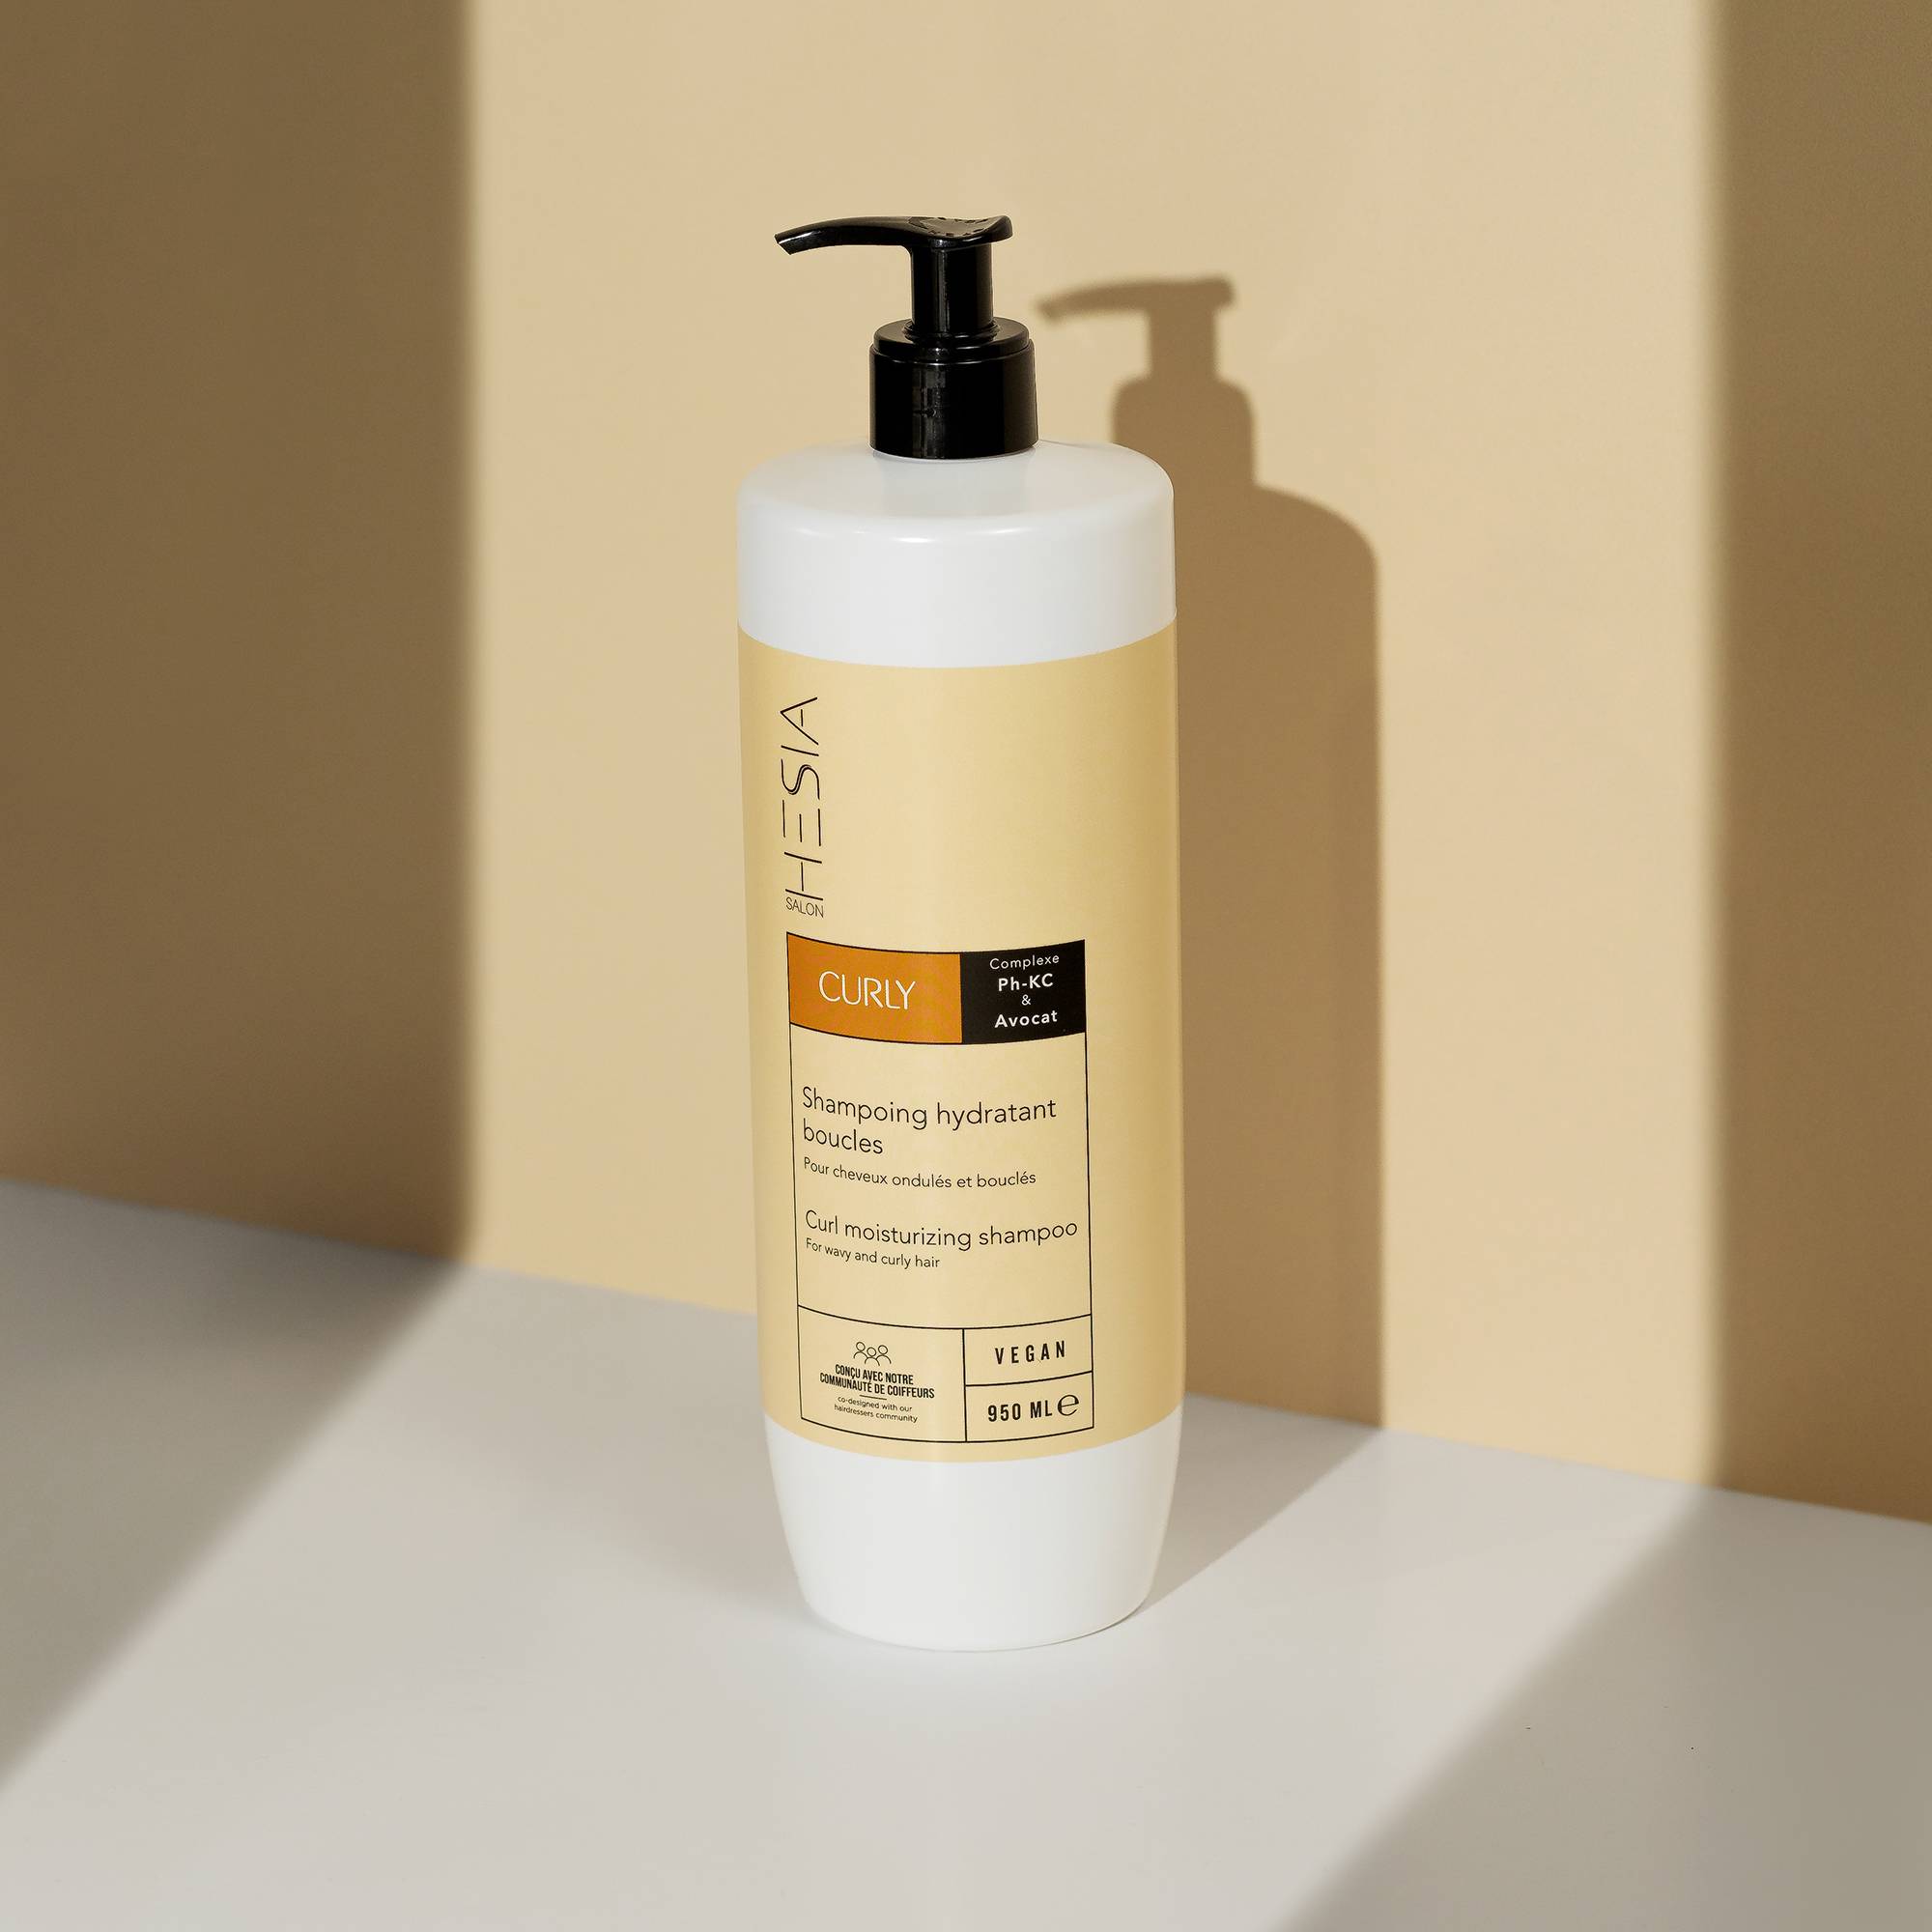 Shampoing hydratant boucles Curly de la marque HESIA Salon Contenance 950ml - 4